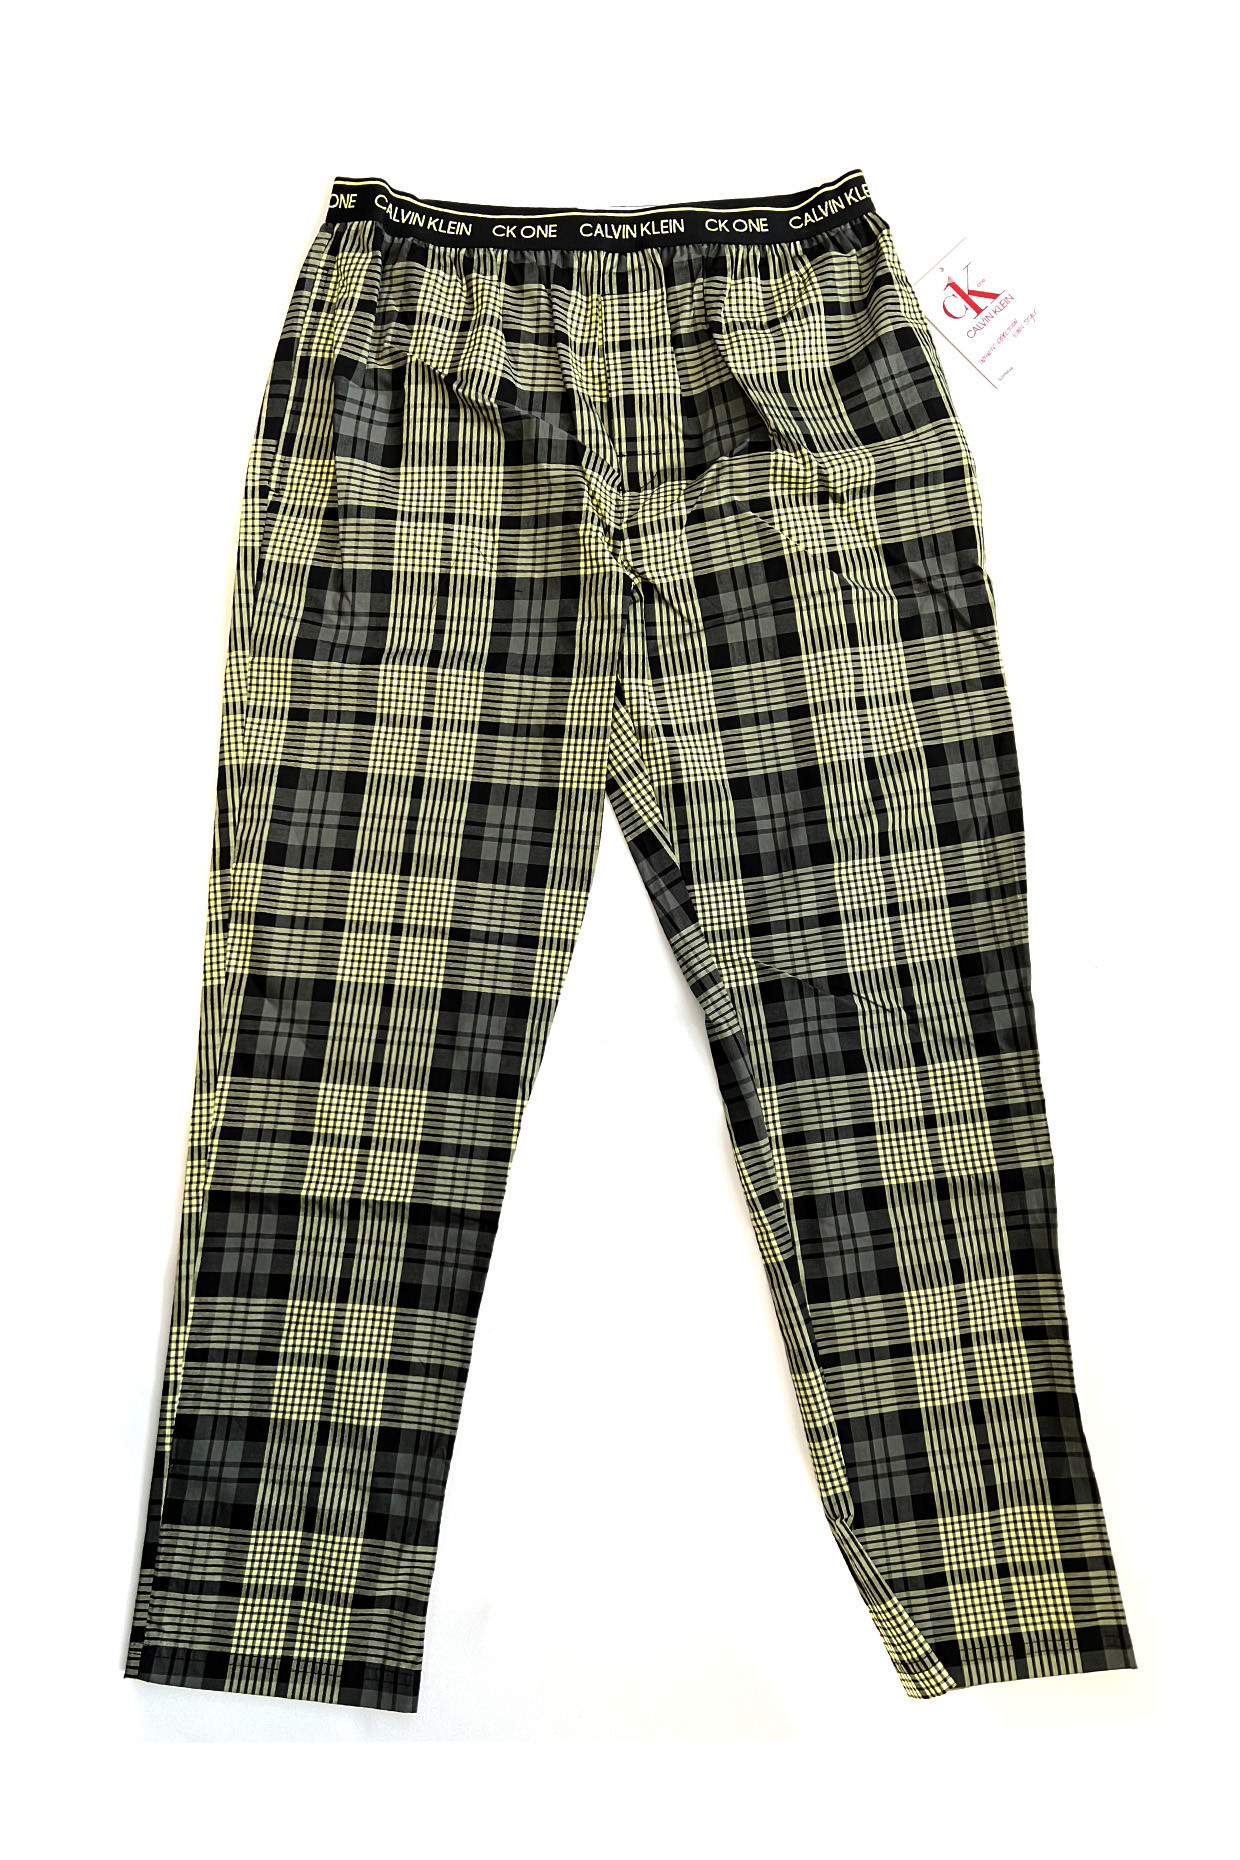 Pánské kalhoty na spaní NM1869E 1YS zeleno-černé - Calvin Klein XL zeleno-černá